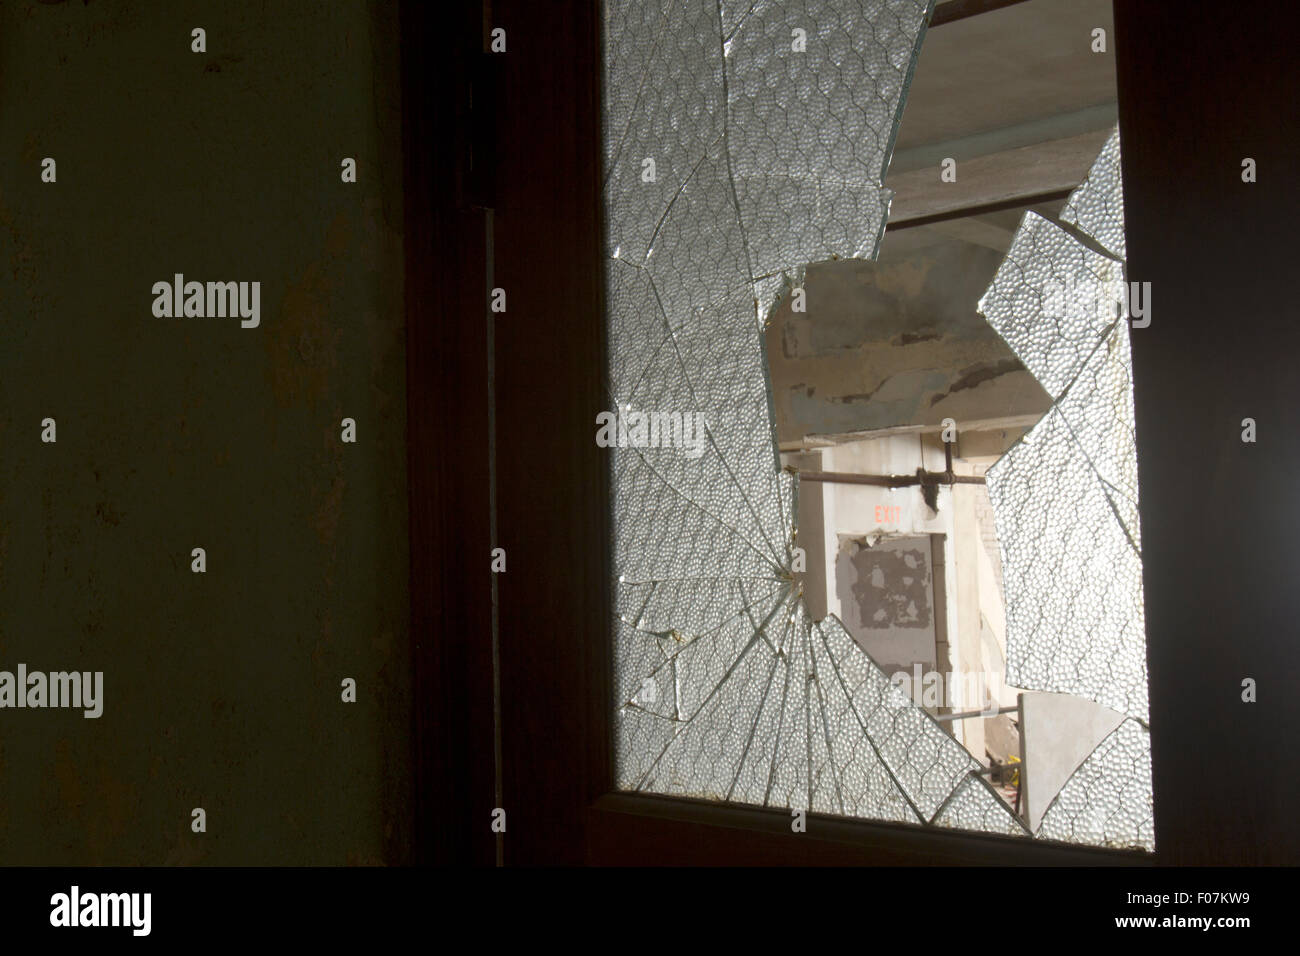 Broken glass in door with exit sign in frame. Stock Photo